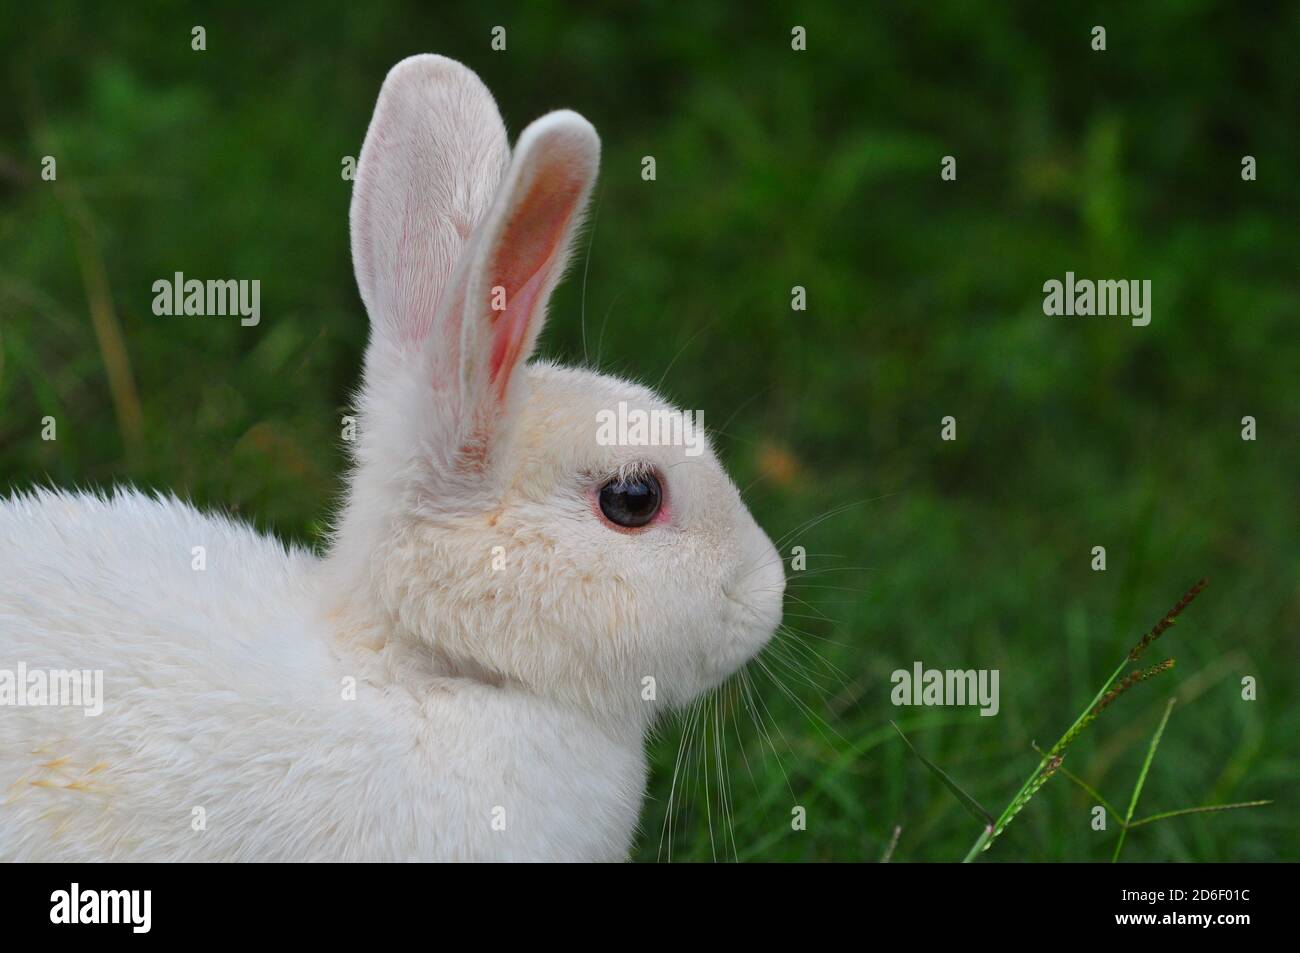 White rabbit on the grass Stock Photo